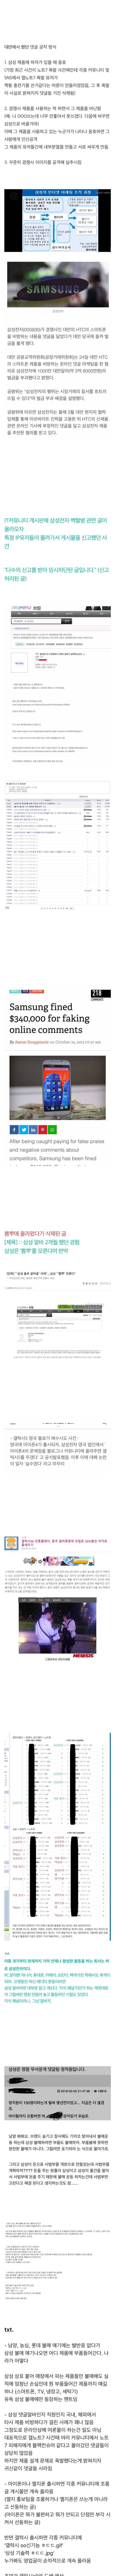 삼성 댓글부대 레전드.jpg | 인스티즈